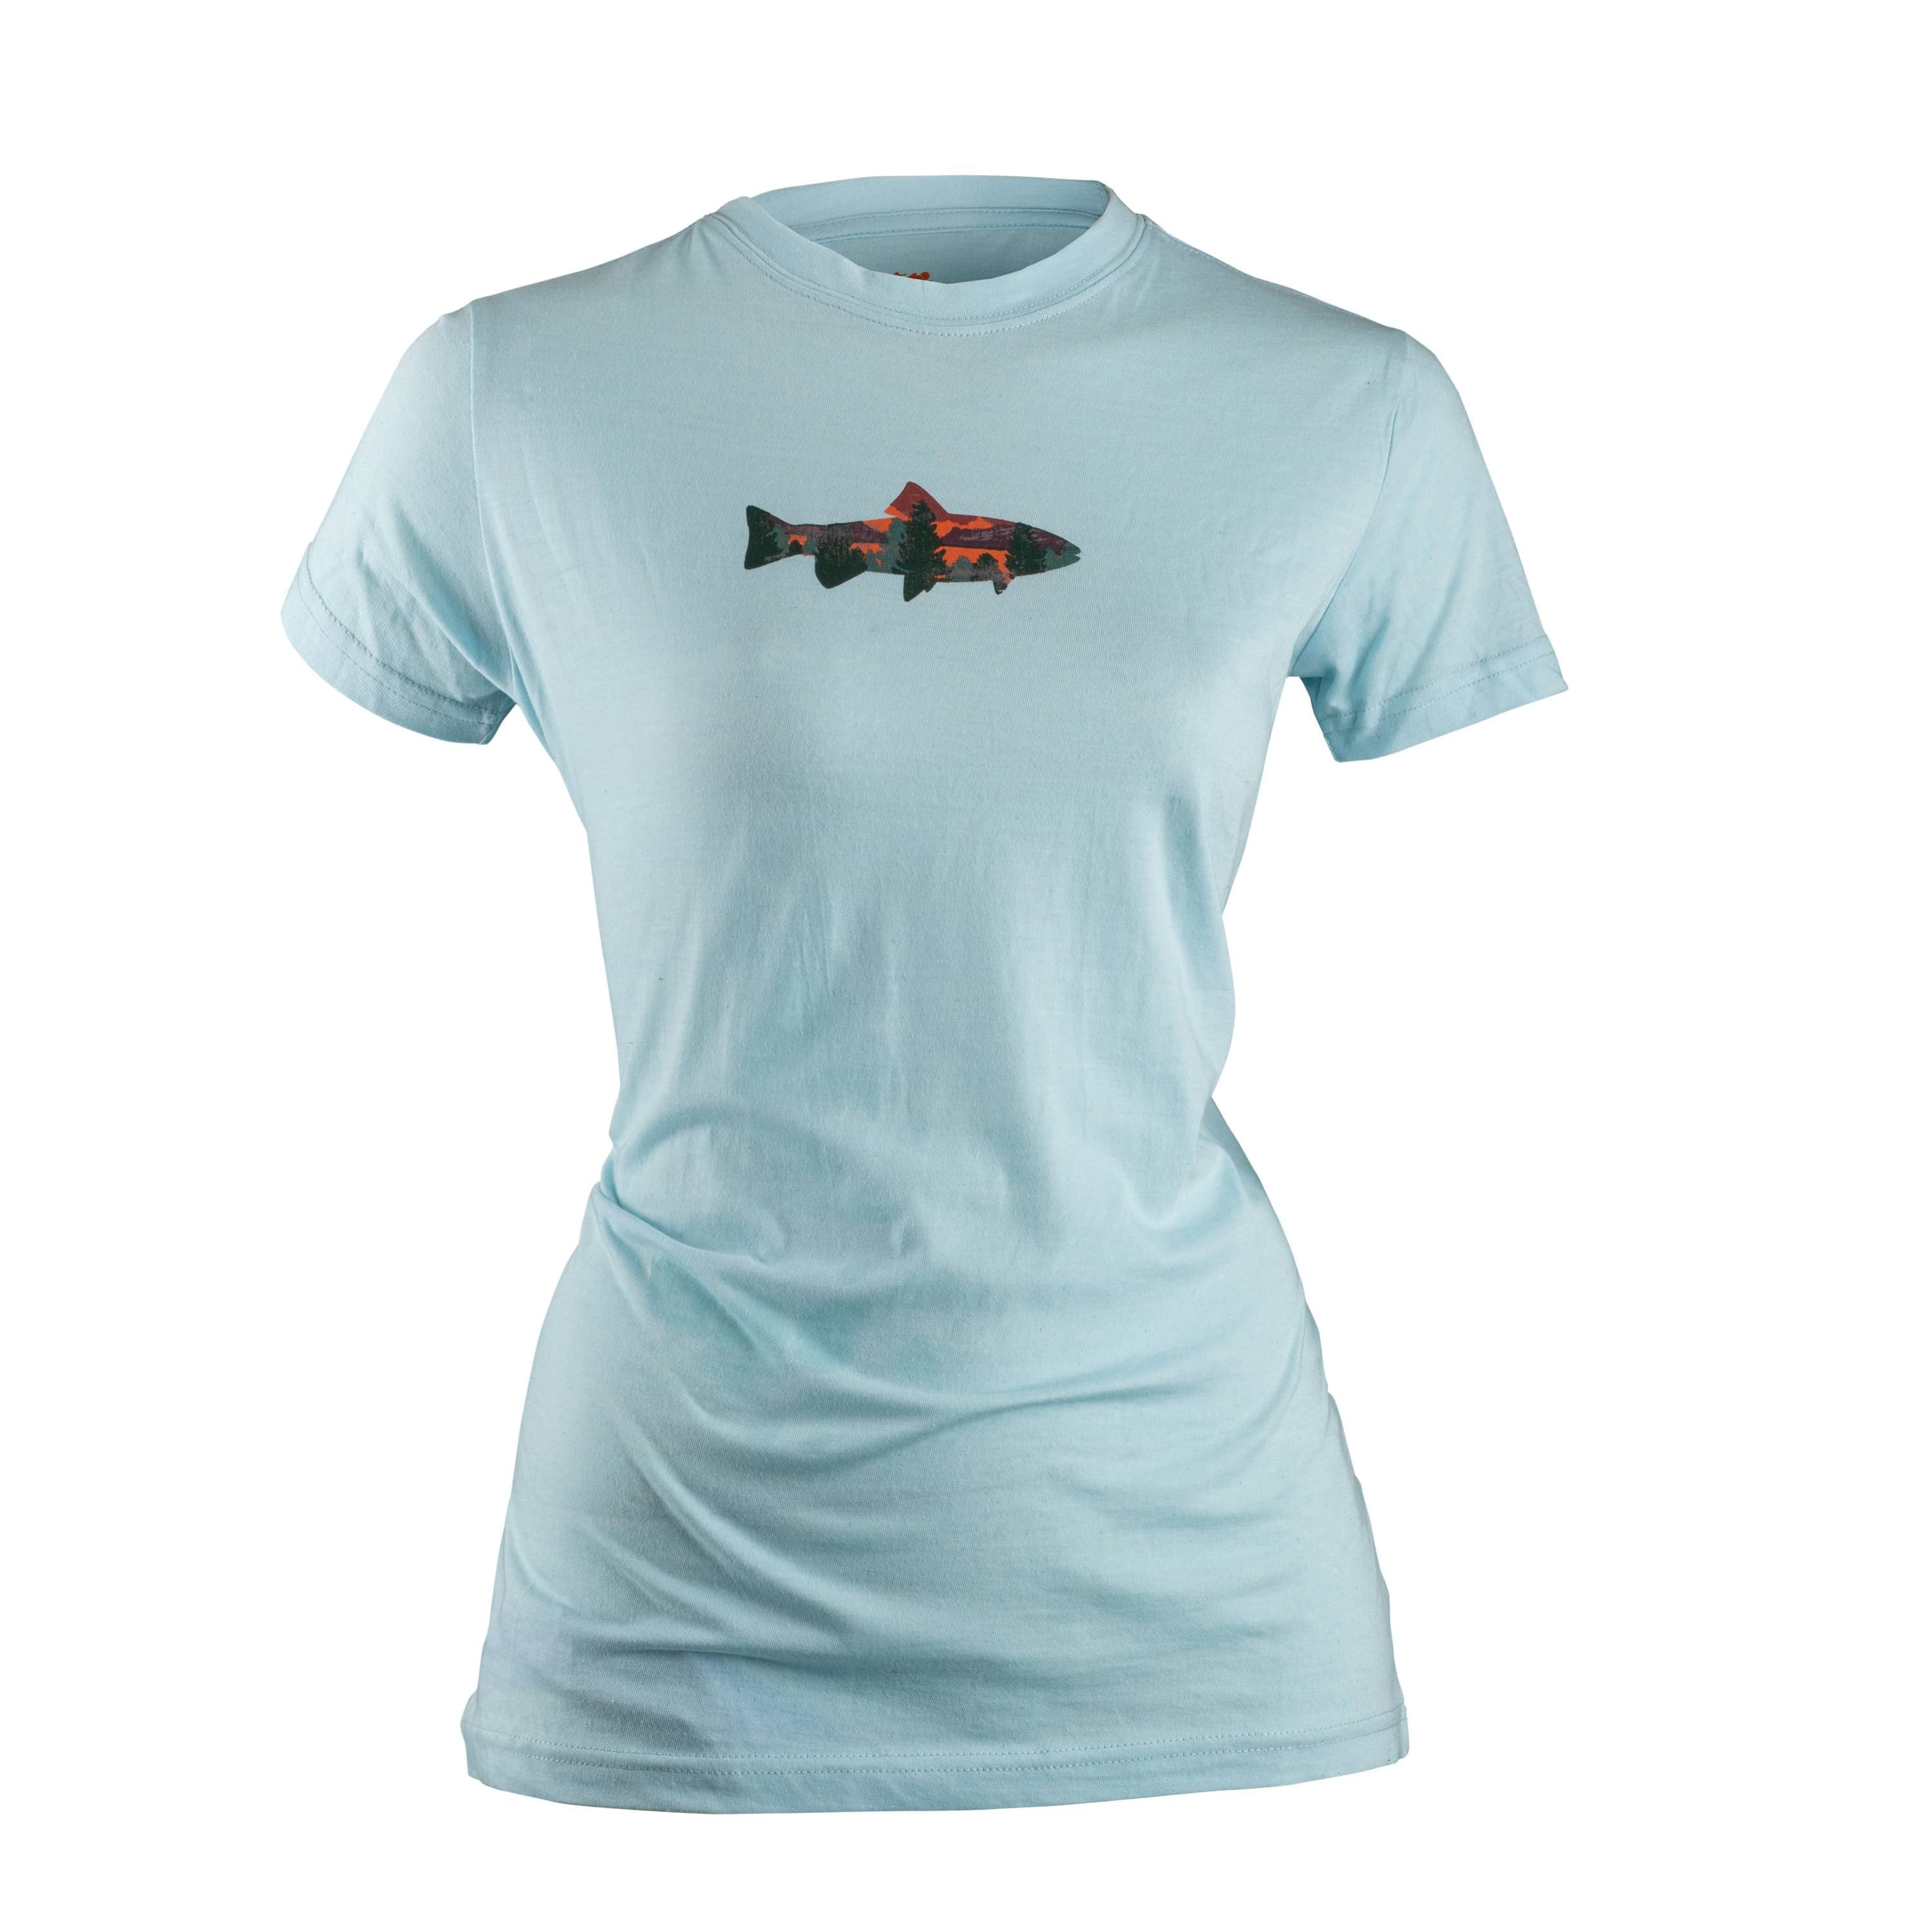 Chandail à manches courtes "Fish" - Femme||"Fish" T-shirt - Women's